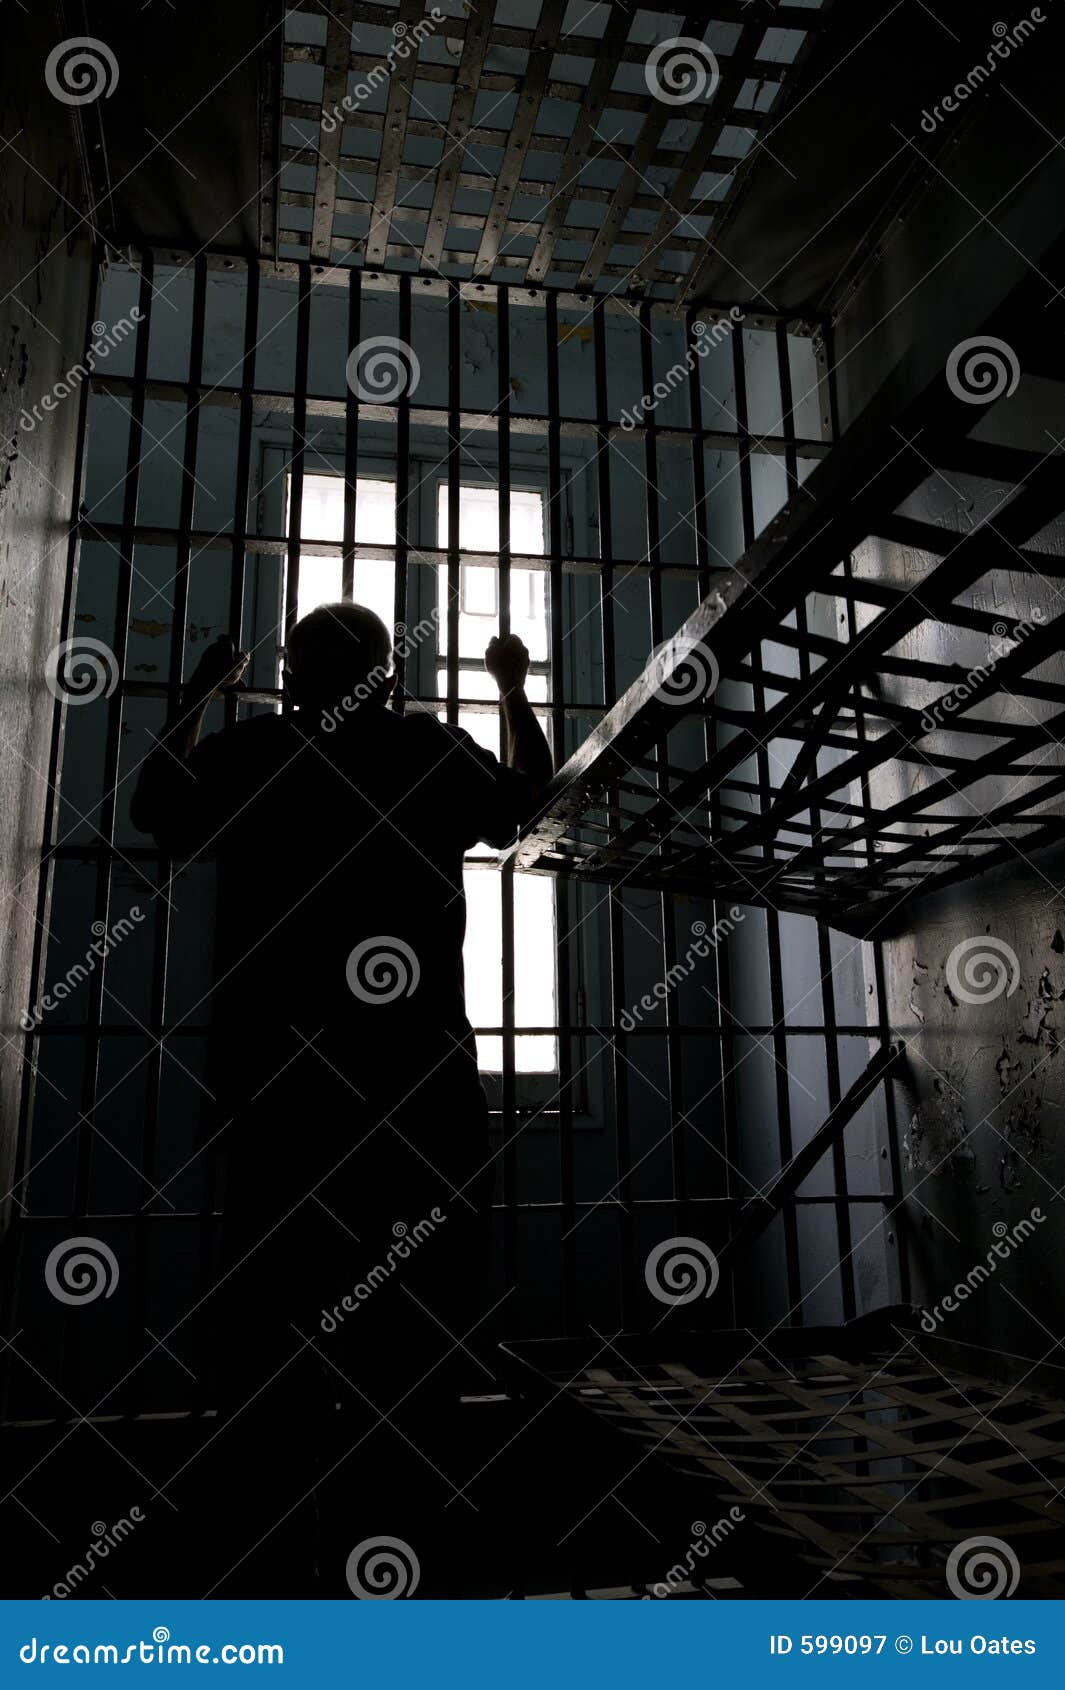 jail wait